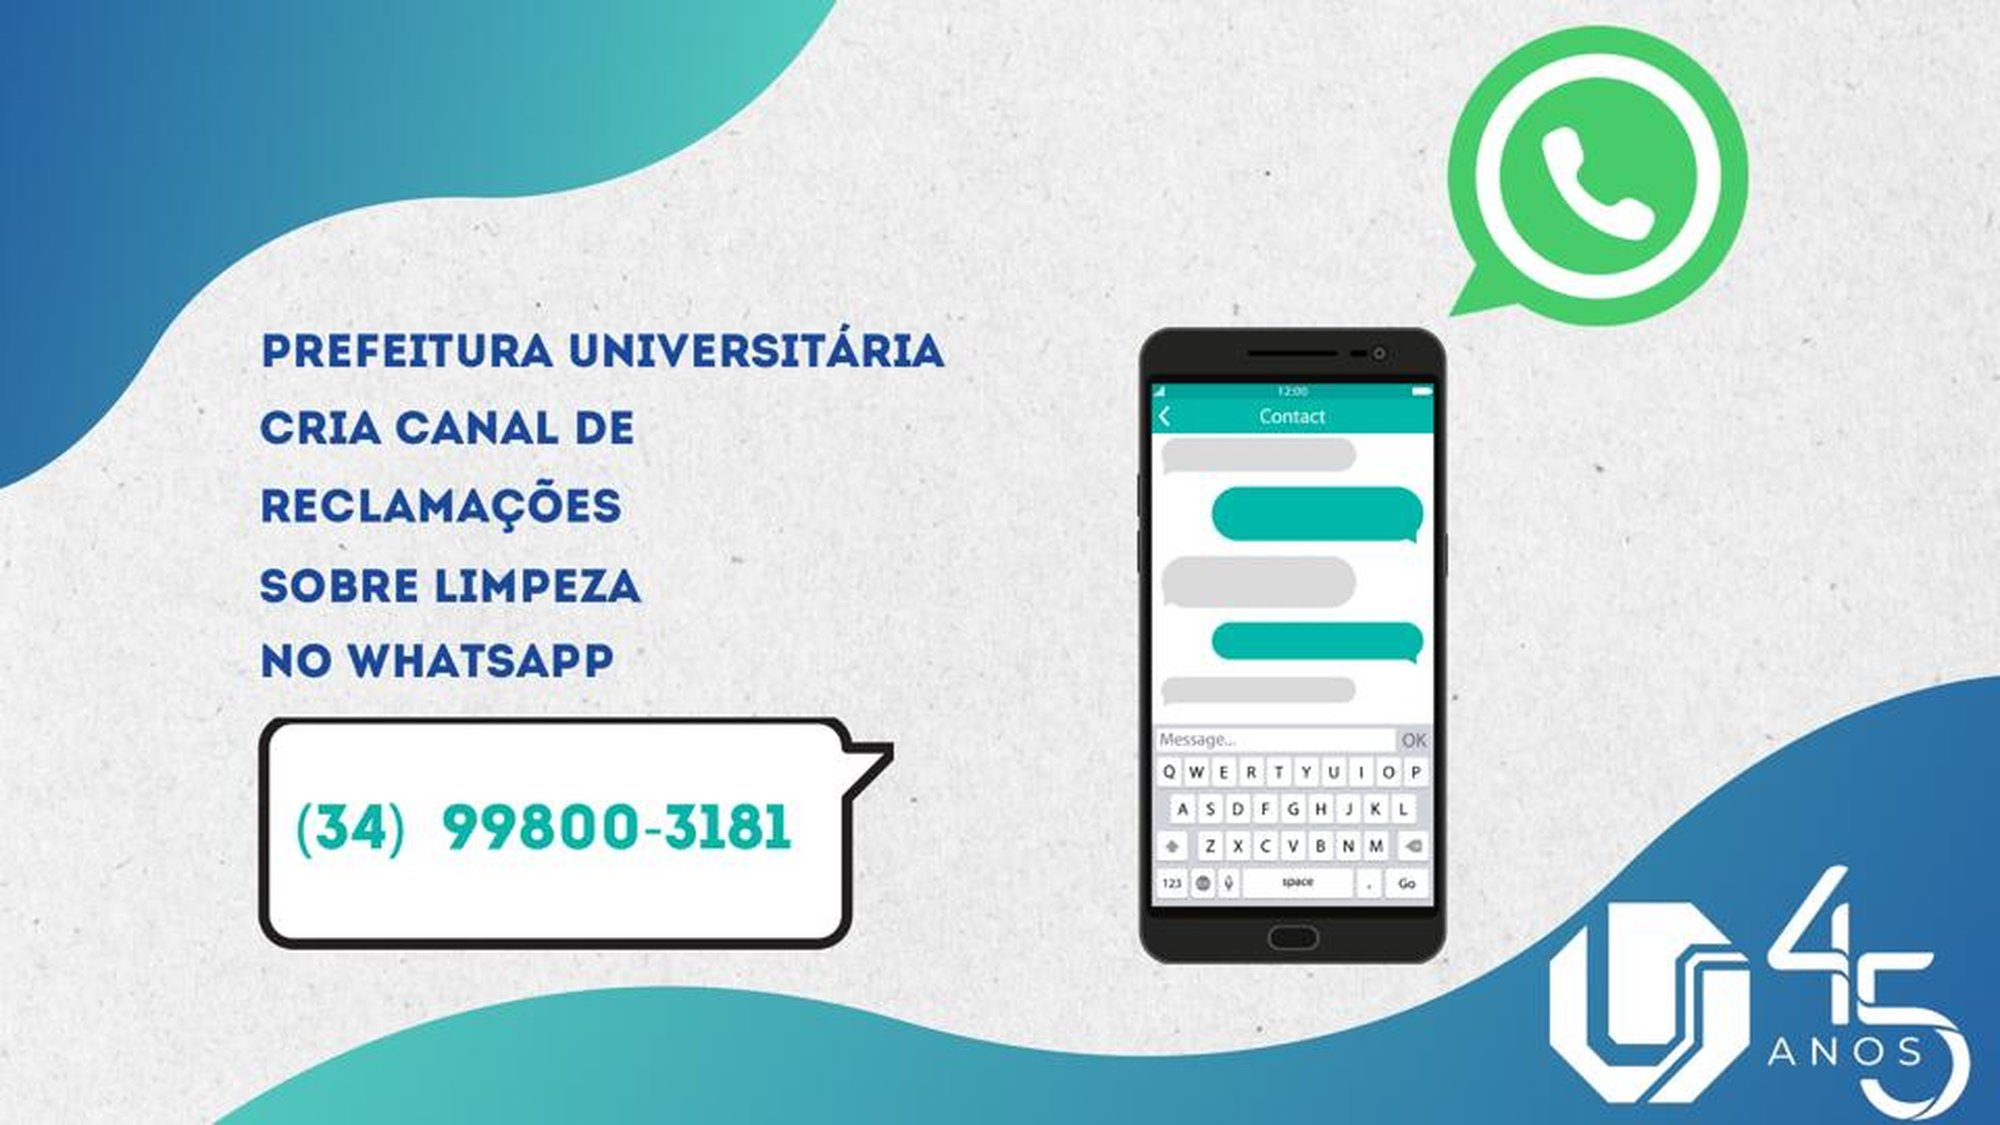 Arte com imagem de um telefone celular e ícone do aplicativo WhatsApp; texto: 'Prefeitura Universitária cria canal de reclamações sobre limpeza no WhatsApp - (34) 99800-3181'